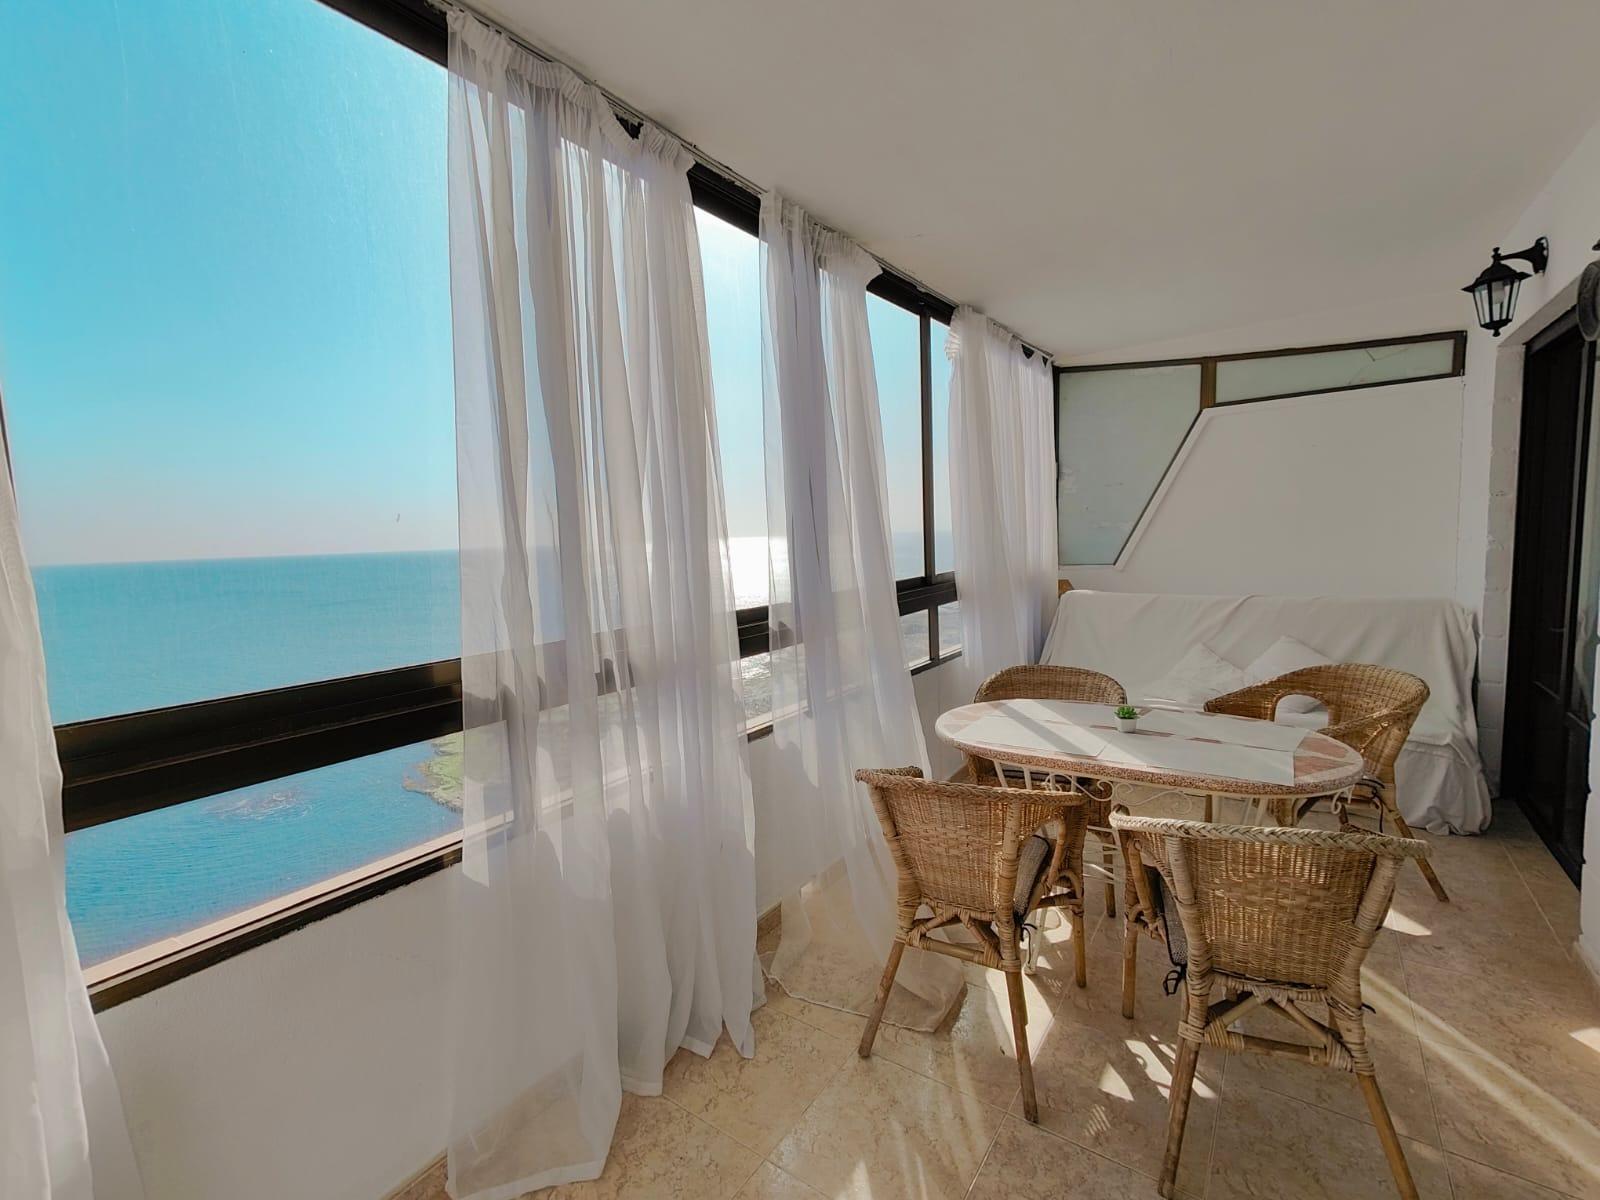 Wohnung mit 2 Schlafzimmer Meerblick ☀️ Torrevieja - Alicante - Spanien